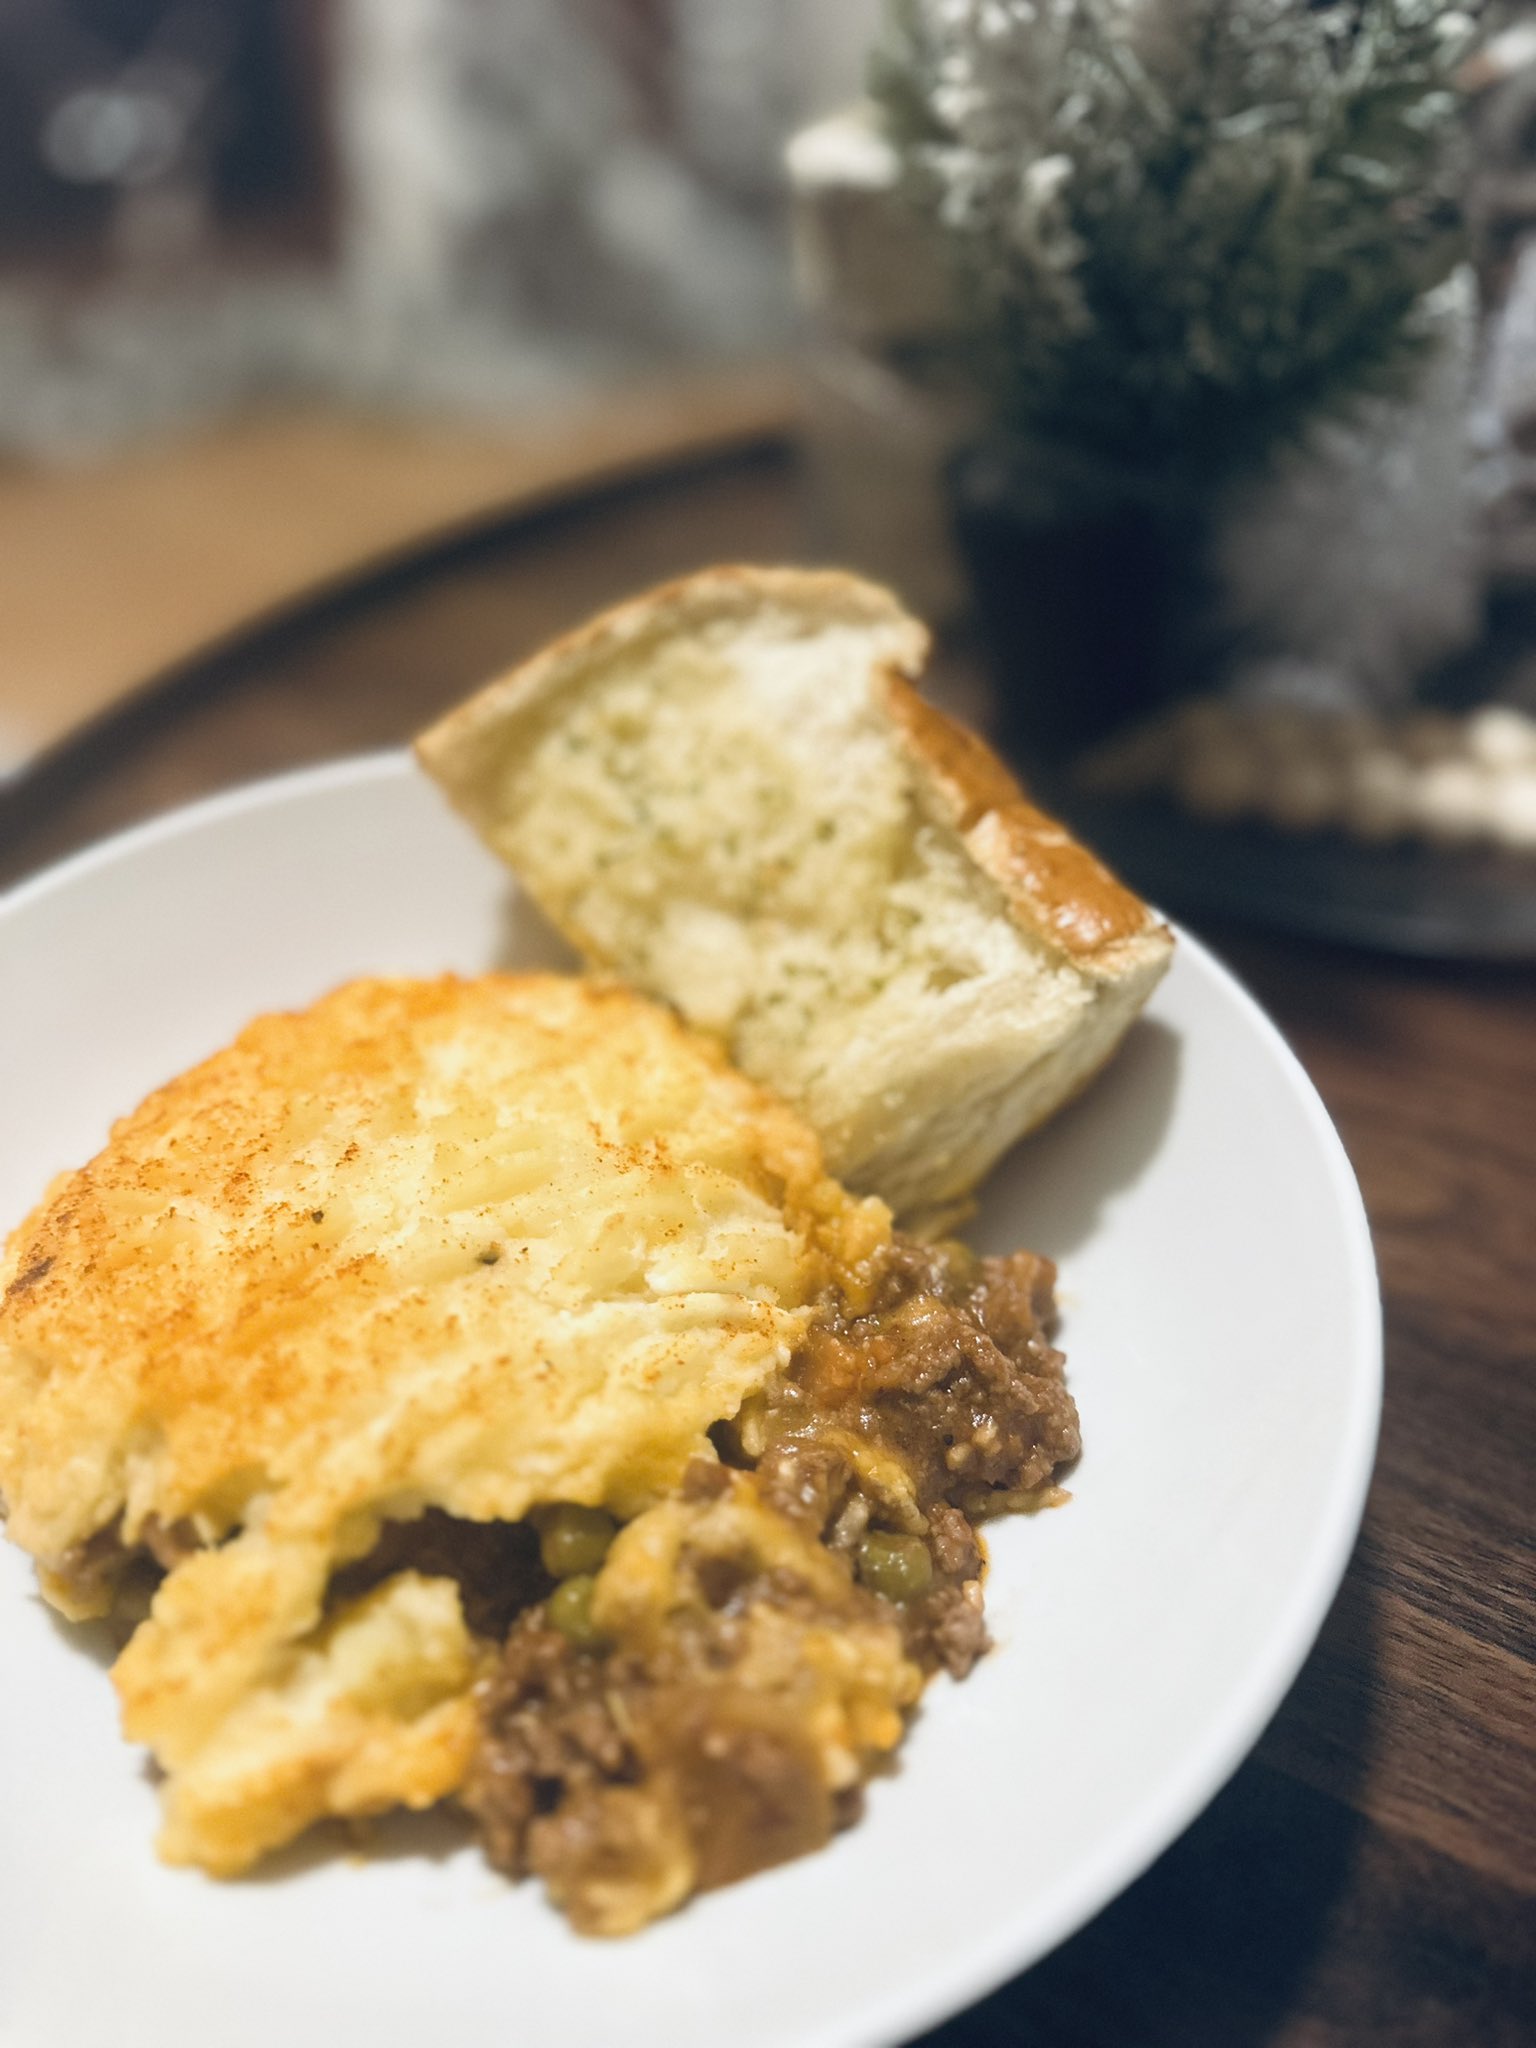 Shepherd's Pie - Craving Home Cooked